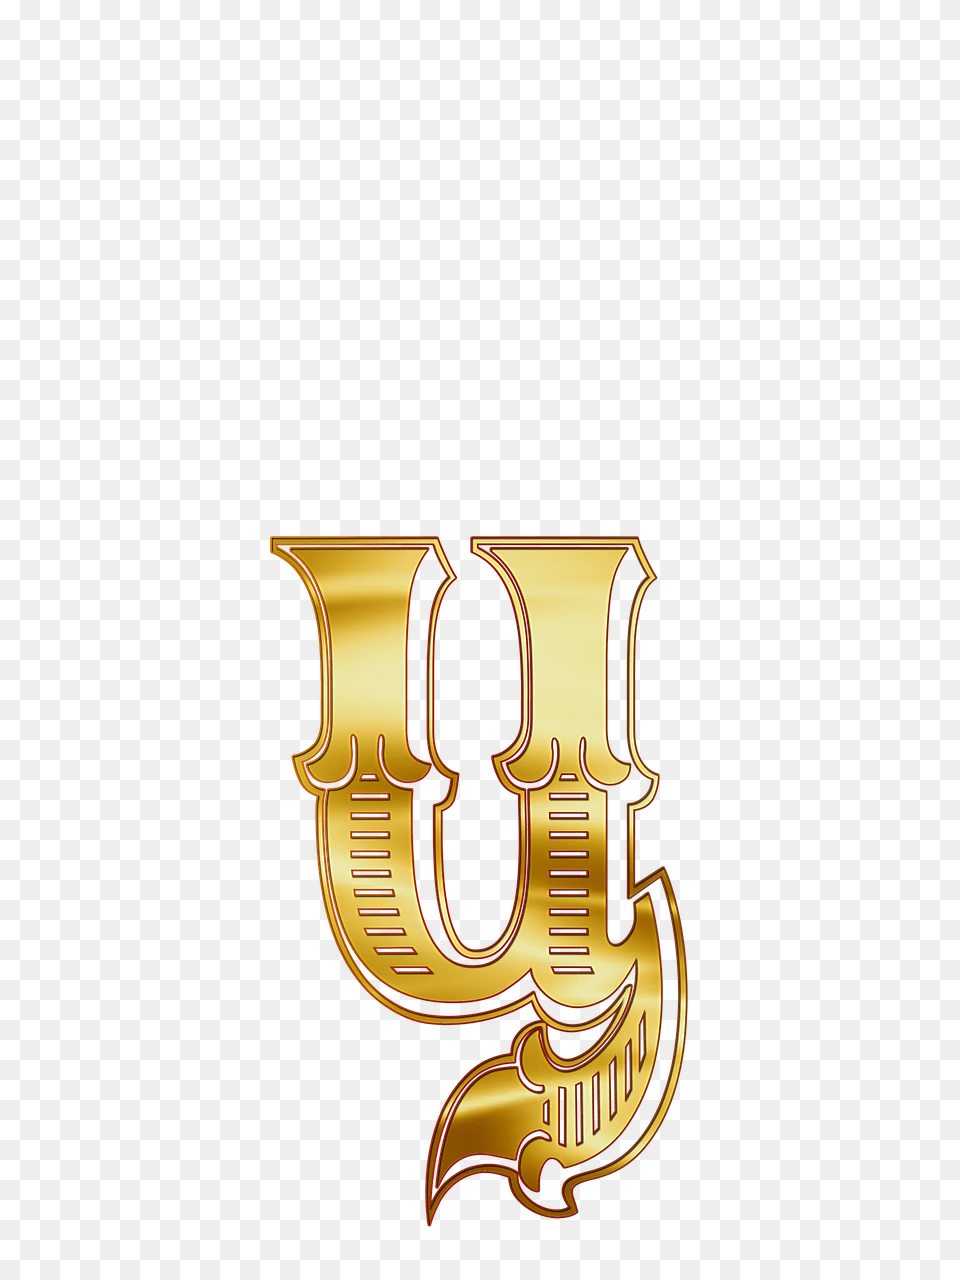 Cyrillic Small Letter Ts, Logo, Emblem, Symbol, Text Free Transparent Png